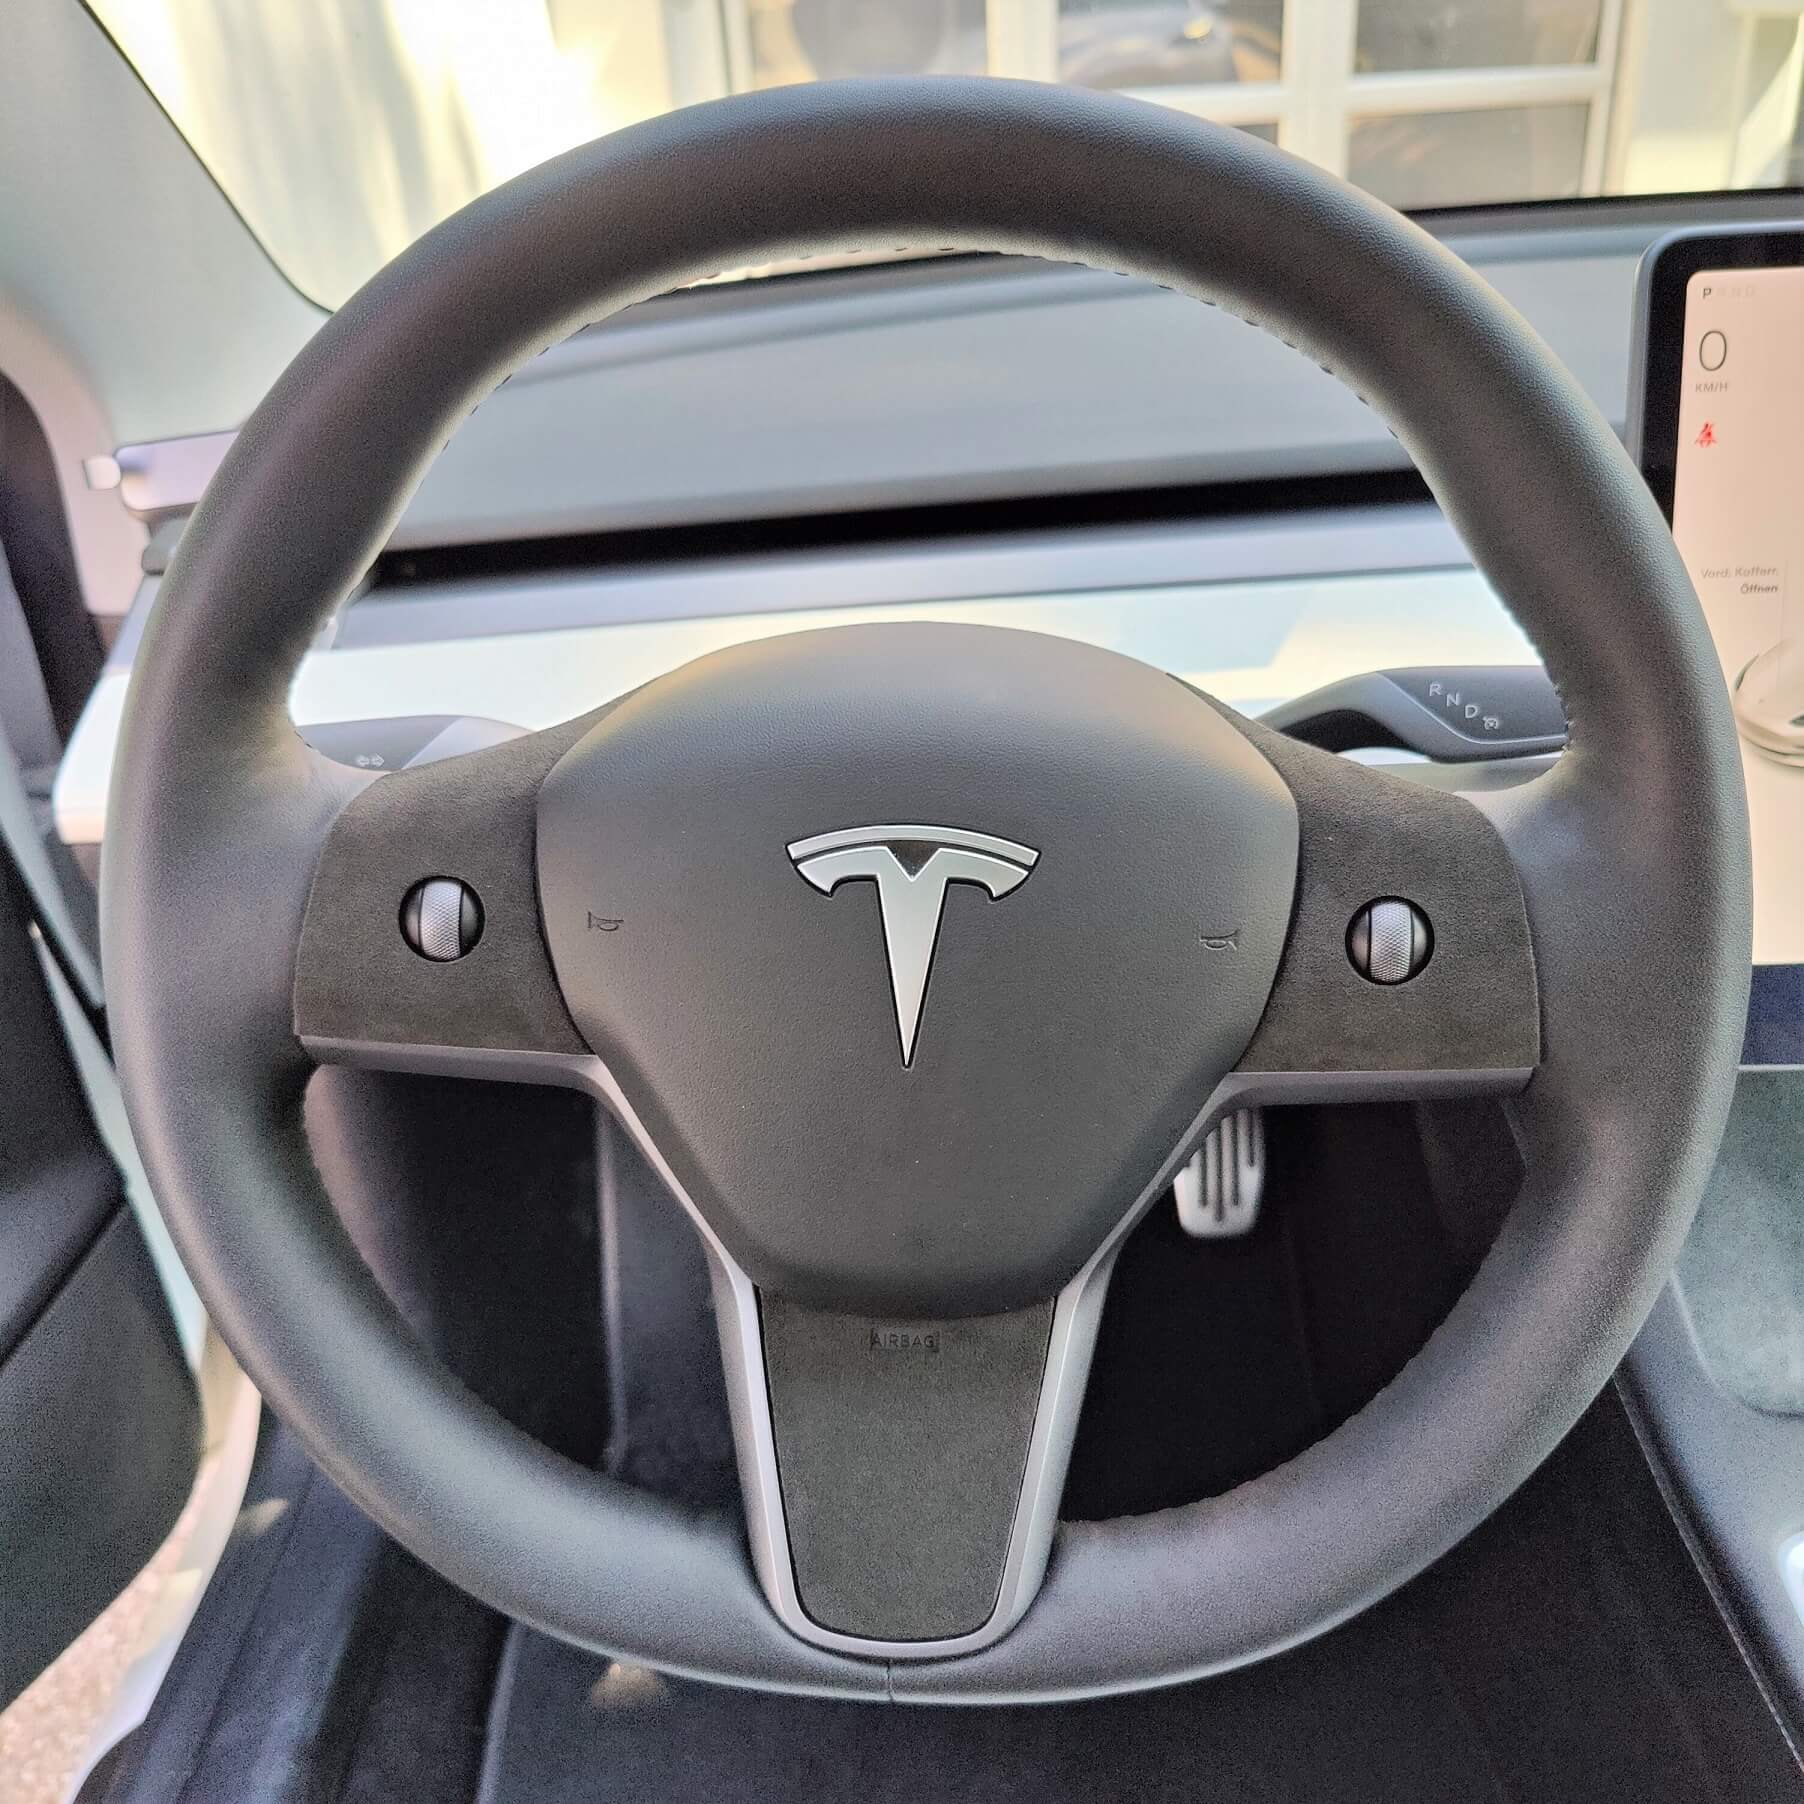 Reisetaschen Gesamtset für Model Y - Tesla Ausstatter